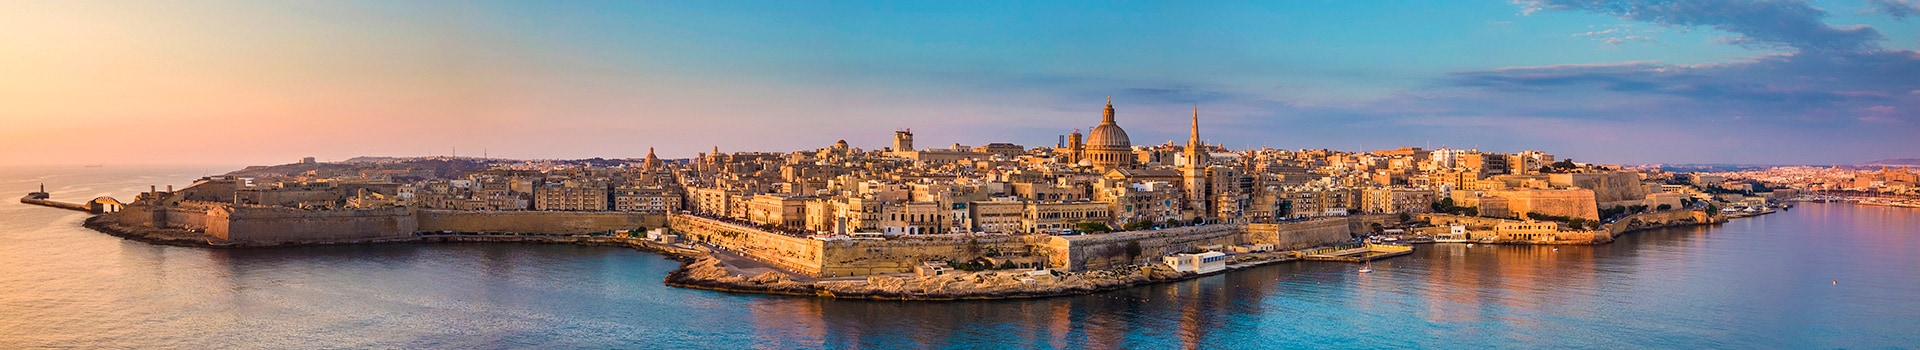 Palermo - Malta